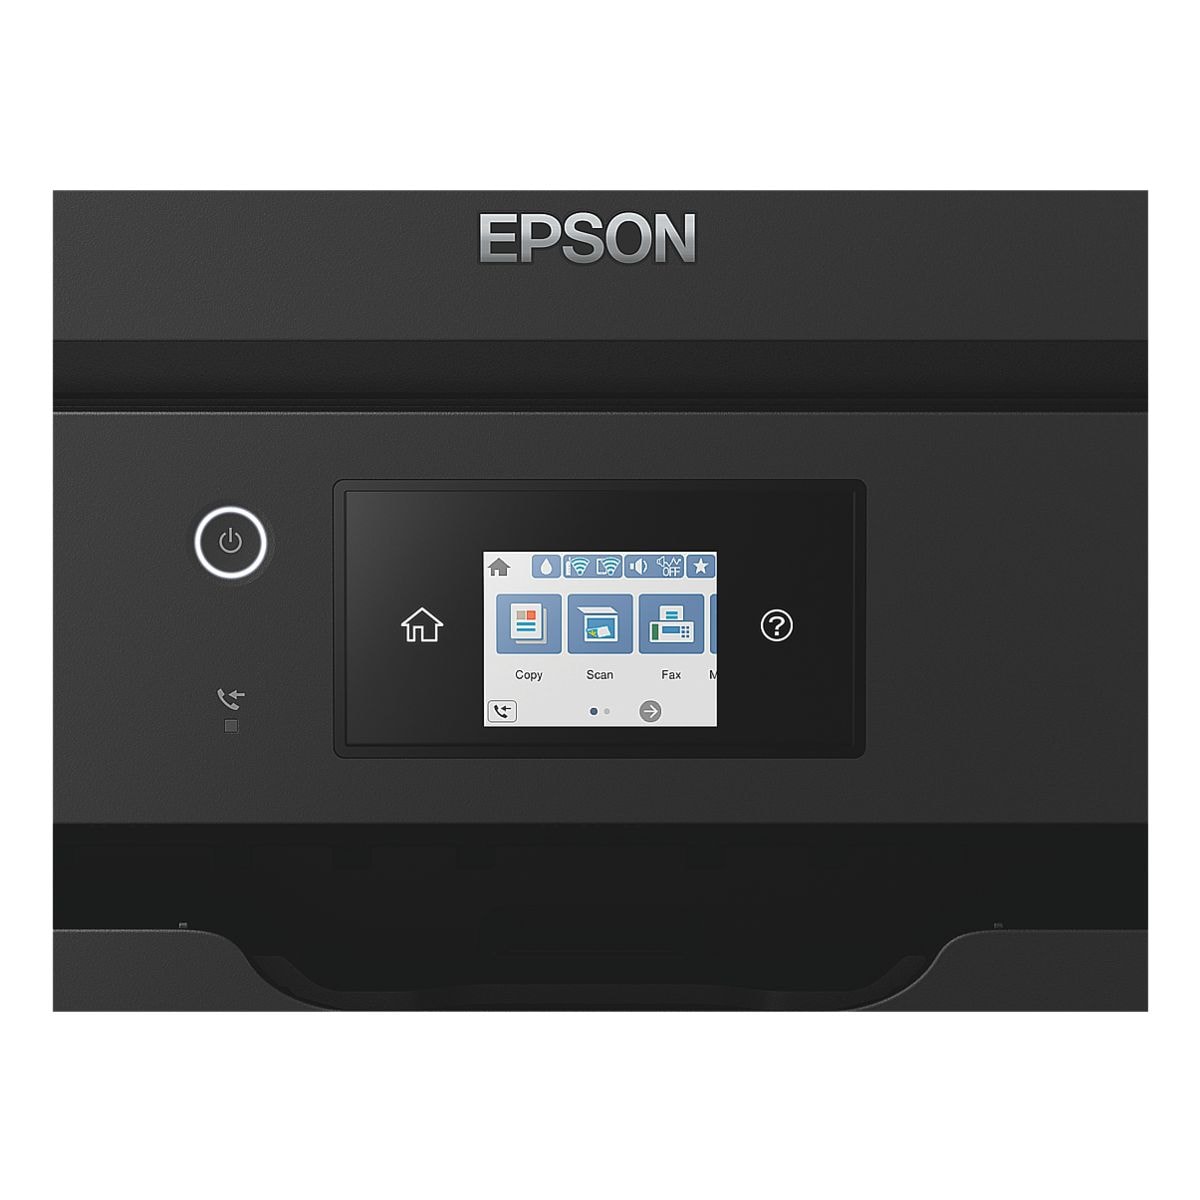 Epson Drucker Workforce Wf 7835dtwf Bei Otto Office Günstig Kaufen 8026